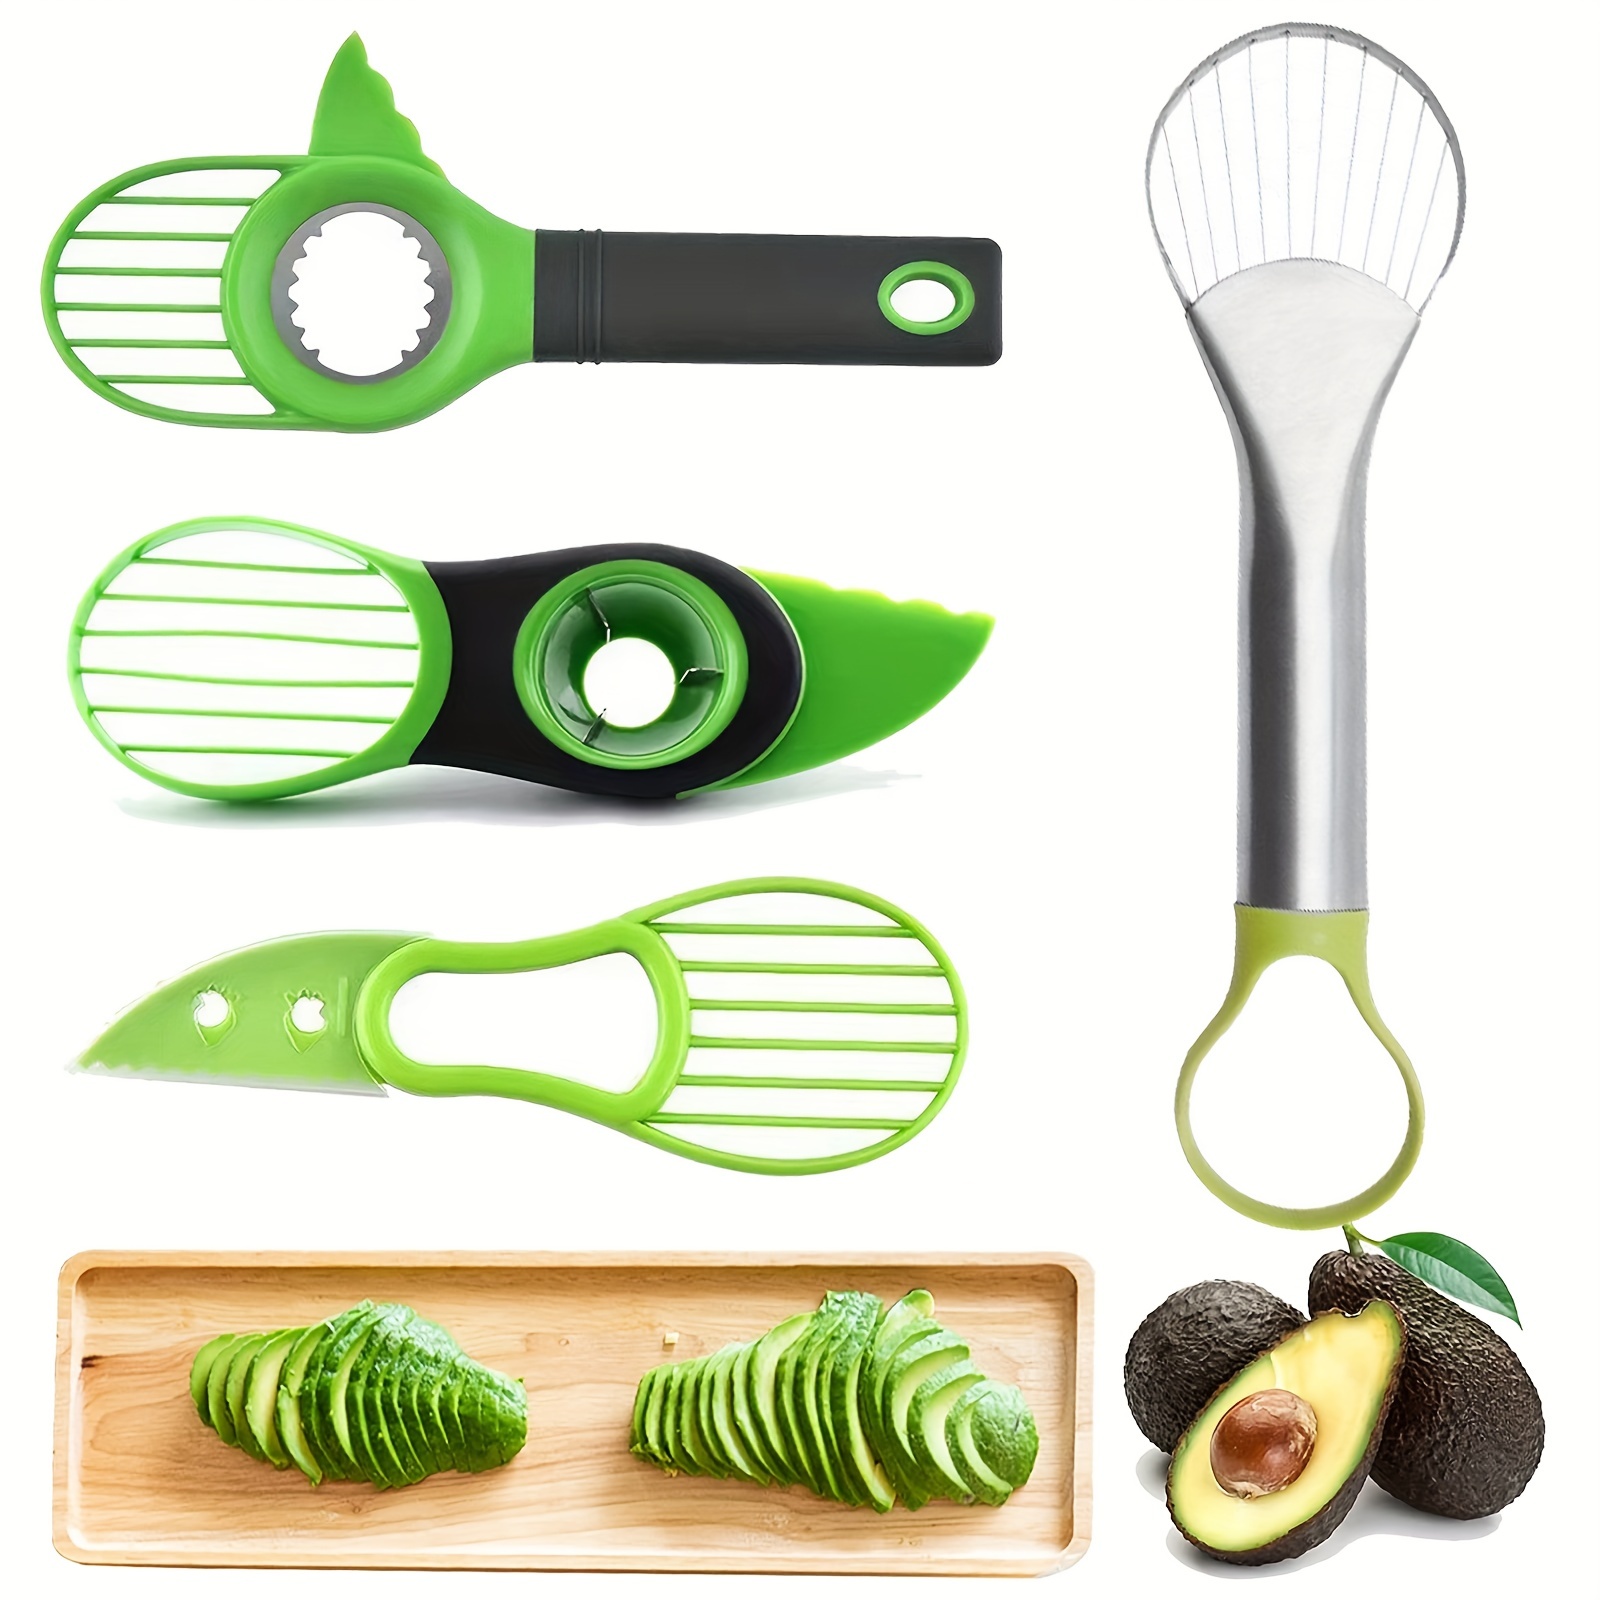 1pc Avocado Tool Set - 3 In 1 Avocado Slicer, Avocado Mat, Avocado